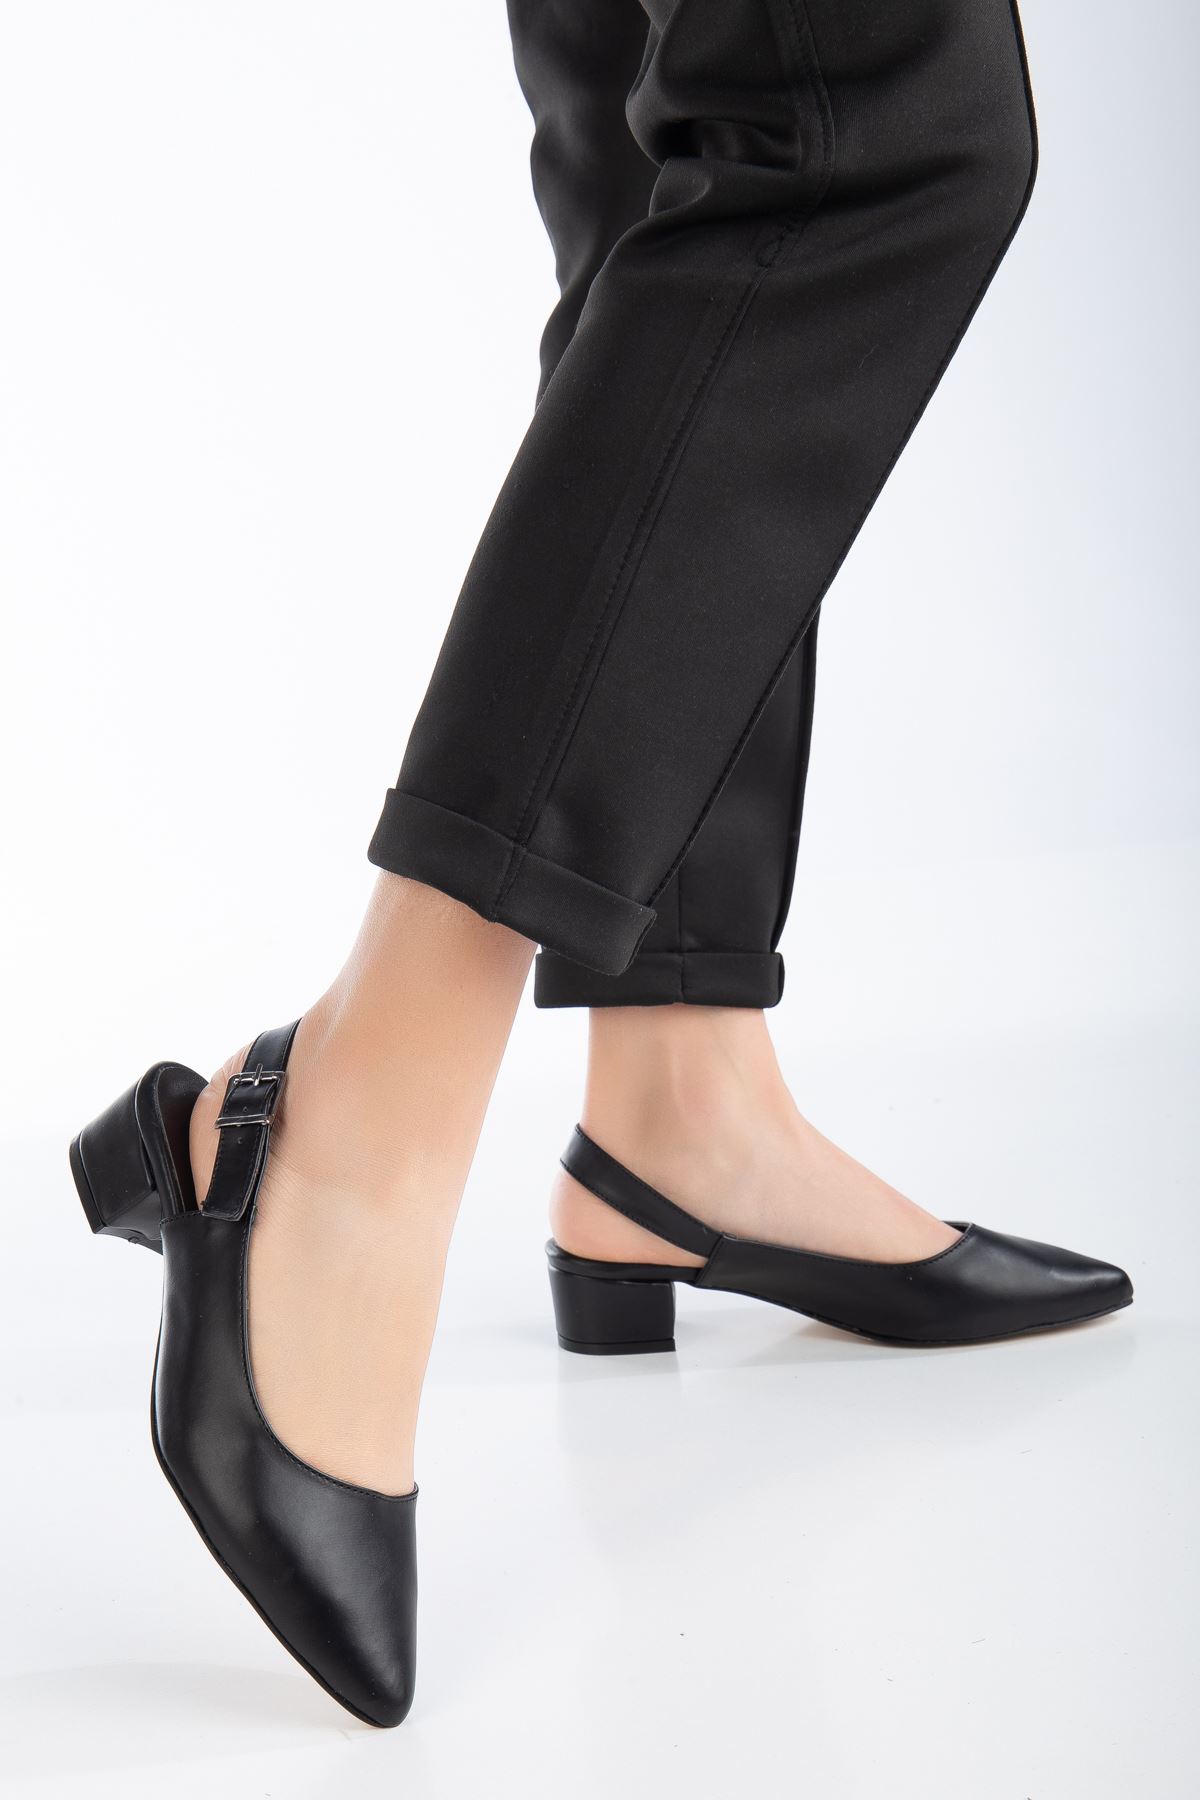 Pante Kısa  Topuklu Ayakkabı  Siyah